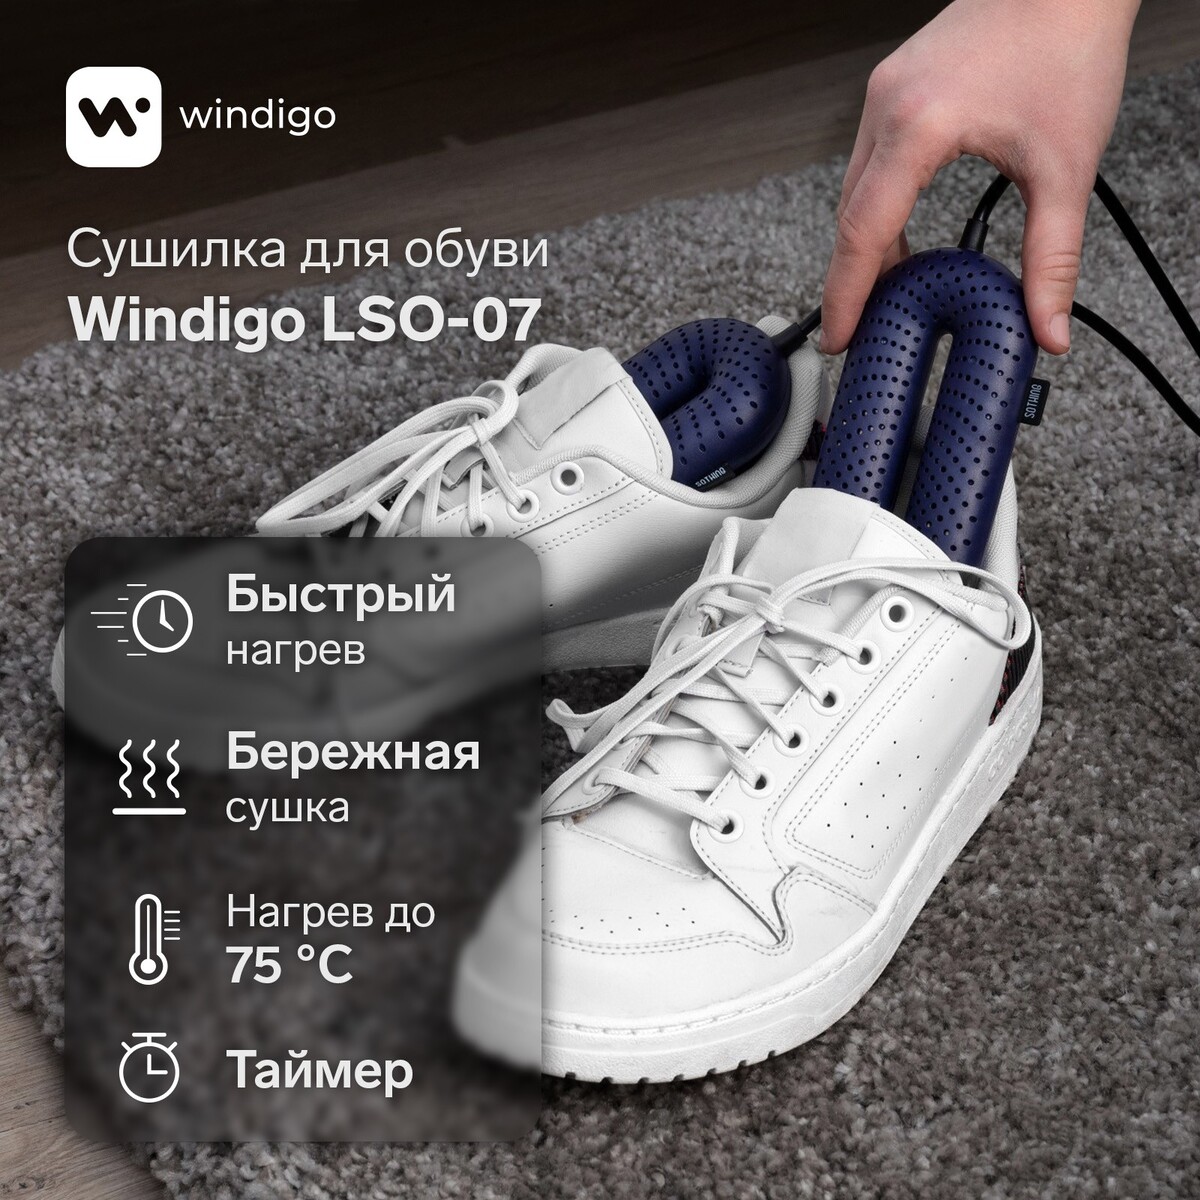 Сушилка для обуви windigo lso-07, 17 см, 20 вт, индикатор, таймер 3/6/9 часов, синяя сушилка для обуви irit ir 3700 12 вт электрическая 220 в